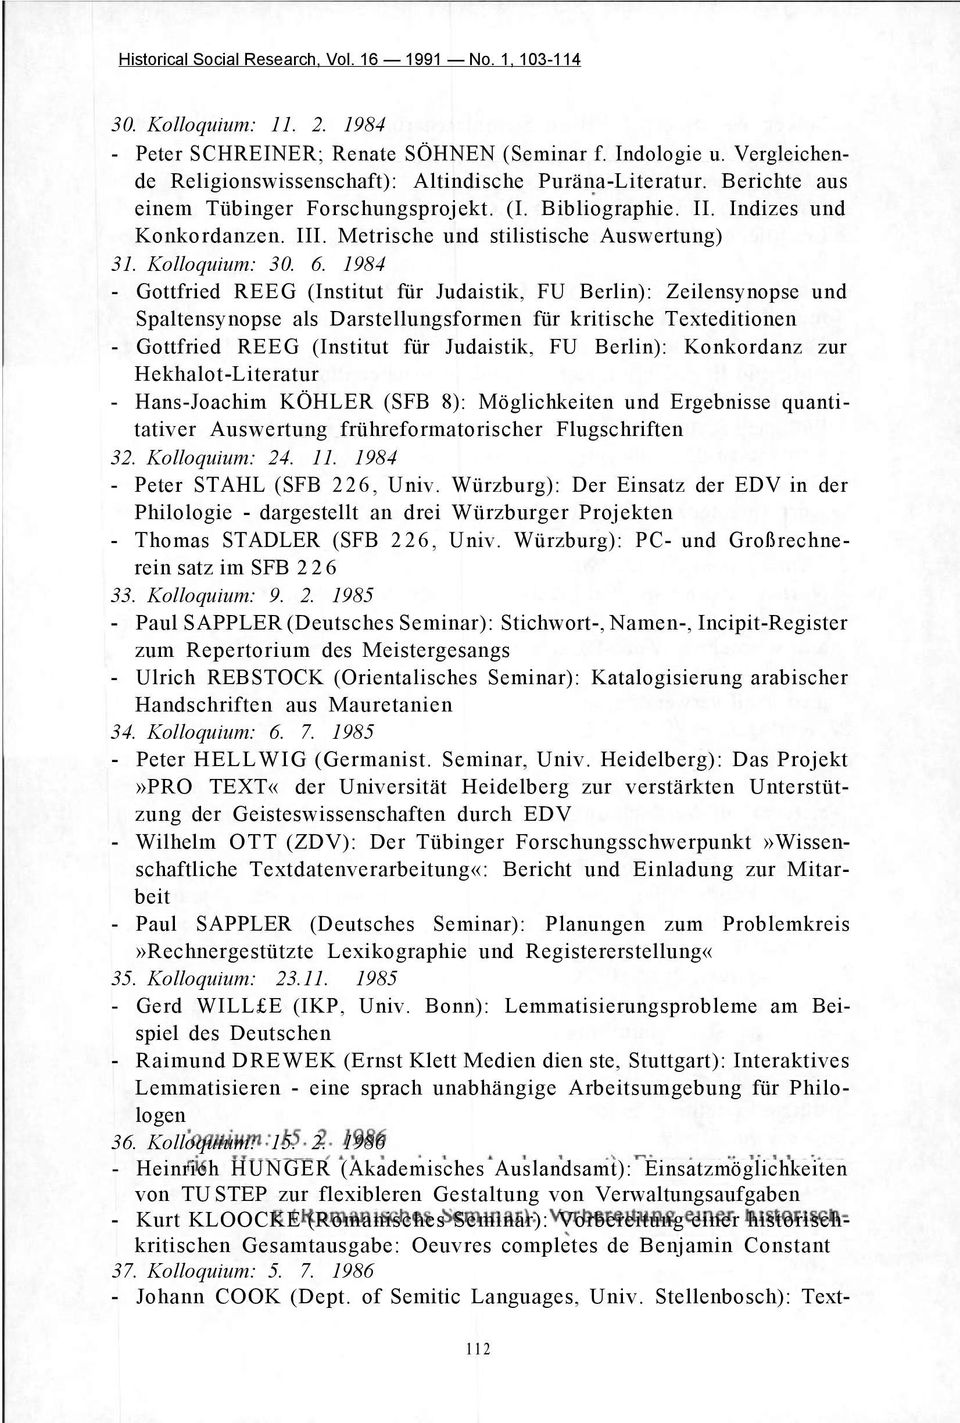 1984 - Gottfried REEG (Institut für Judaistik, FU Berlin): Zeilensynopse und Spaltensynopse als Darstellungsformen für kritische Texteditionen - Gottfried REEG (Institut für Judaistik, FU Berlin):